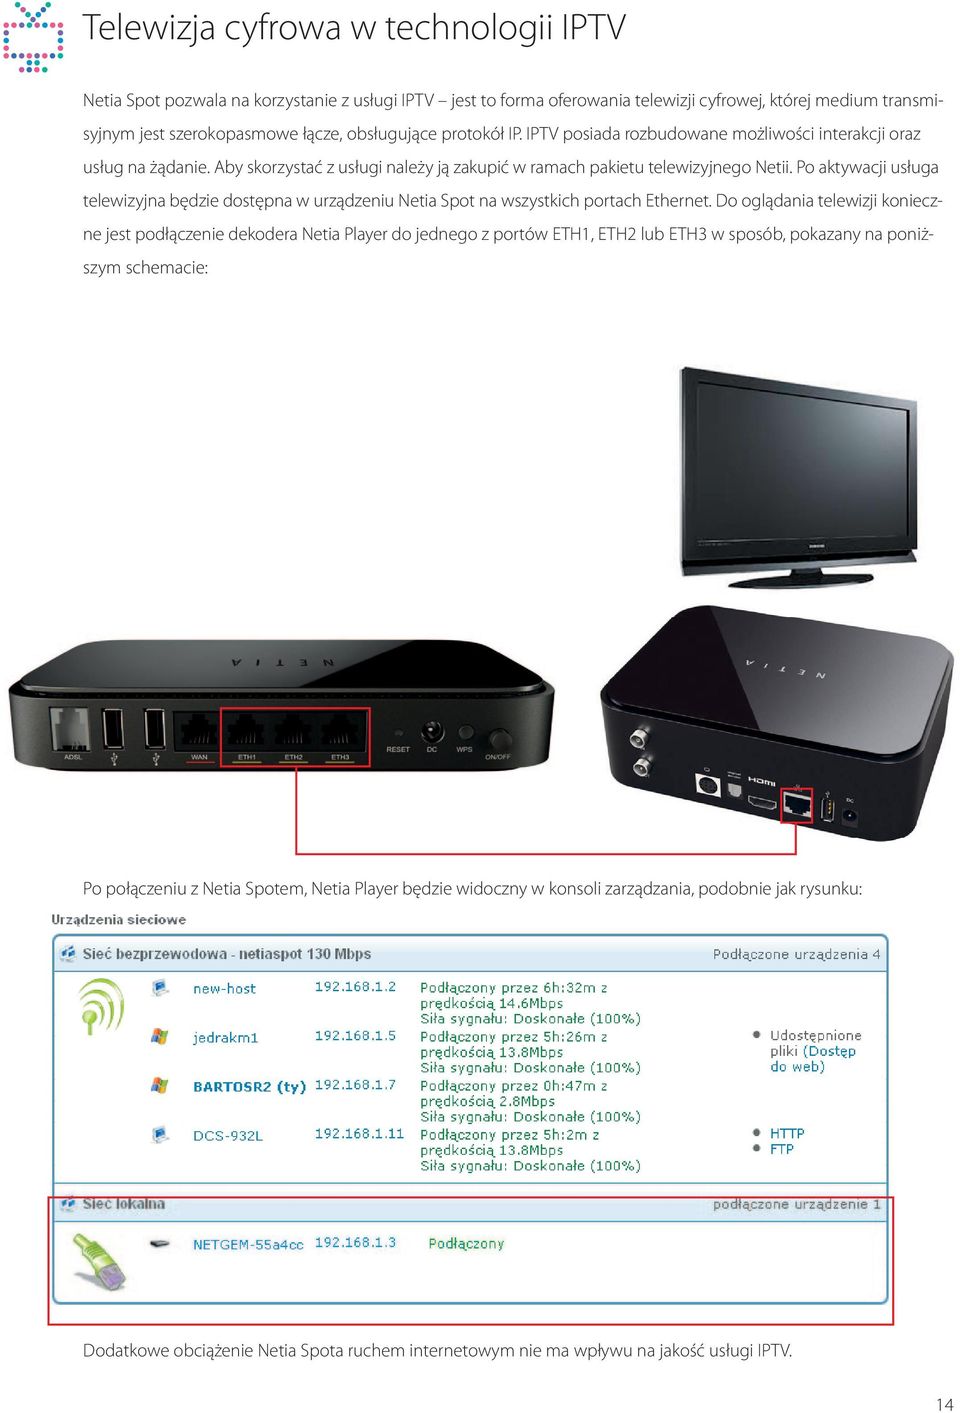 Po aktywacji usługa telewizyjna będzie dostępna w urządzeniu Netia Spot na wszystkich portach Ethernet.